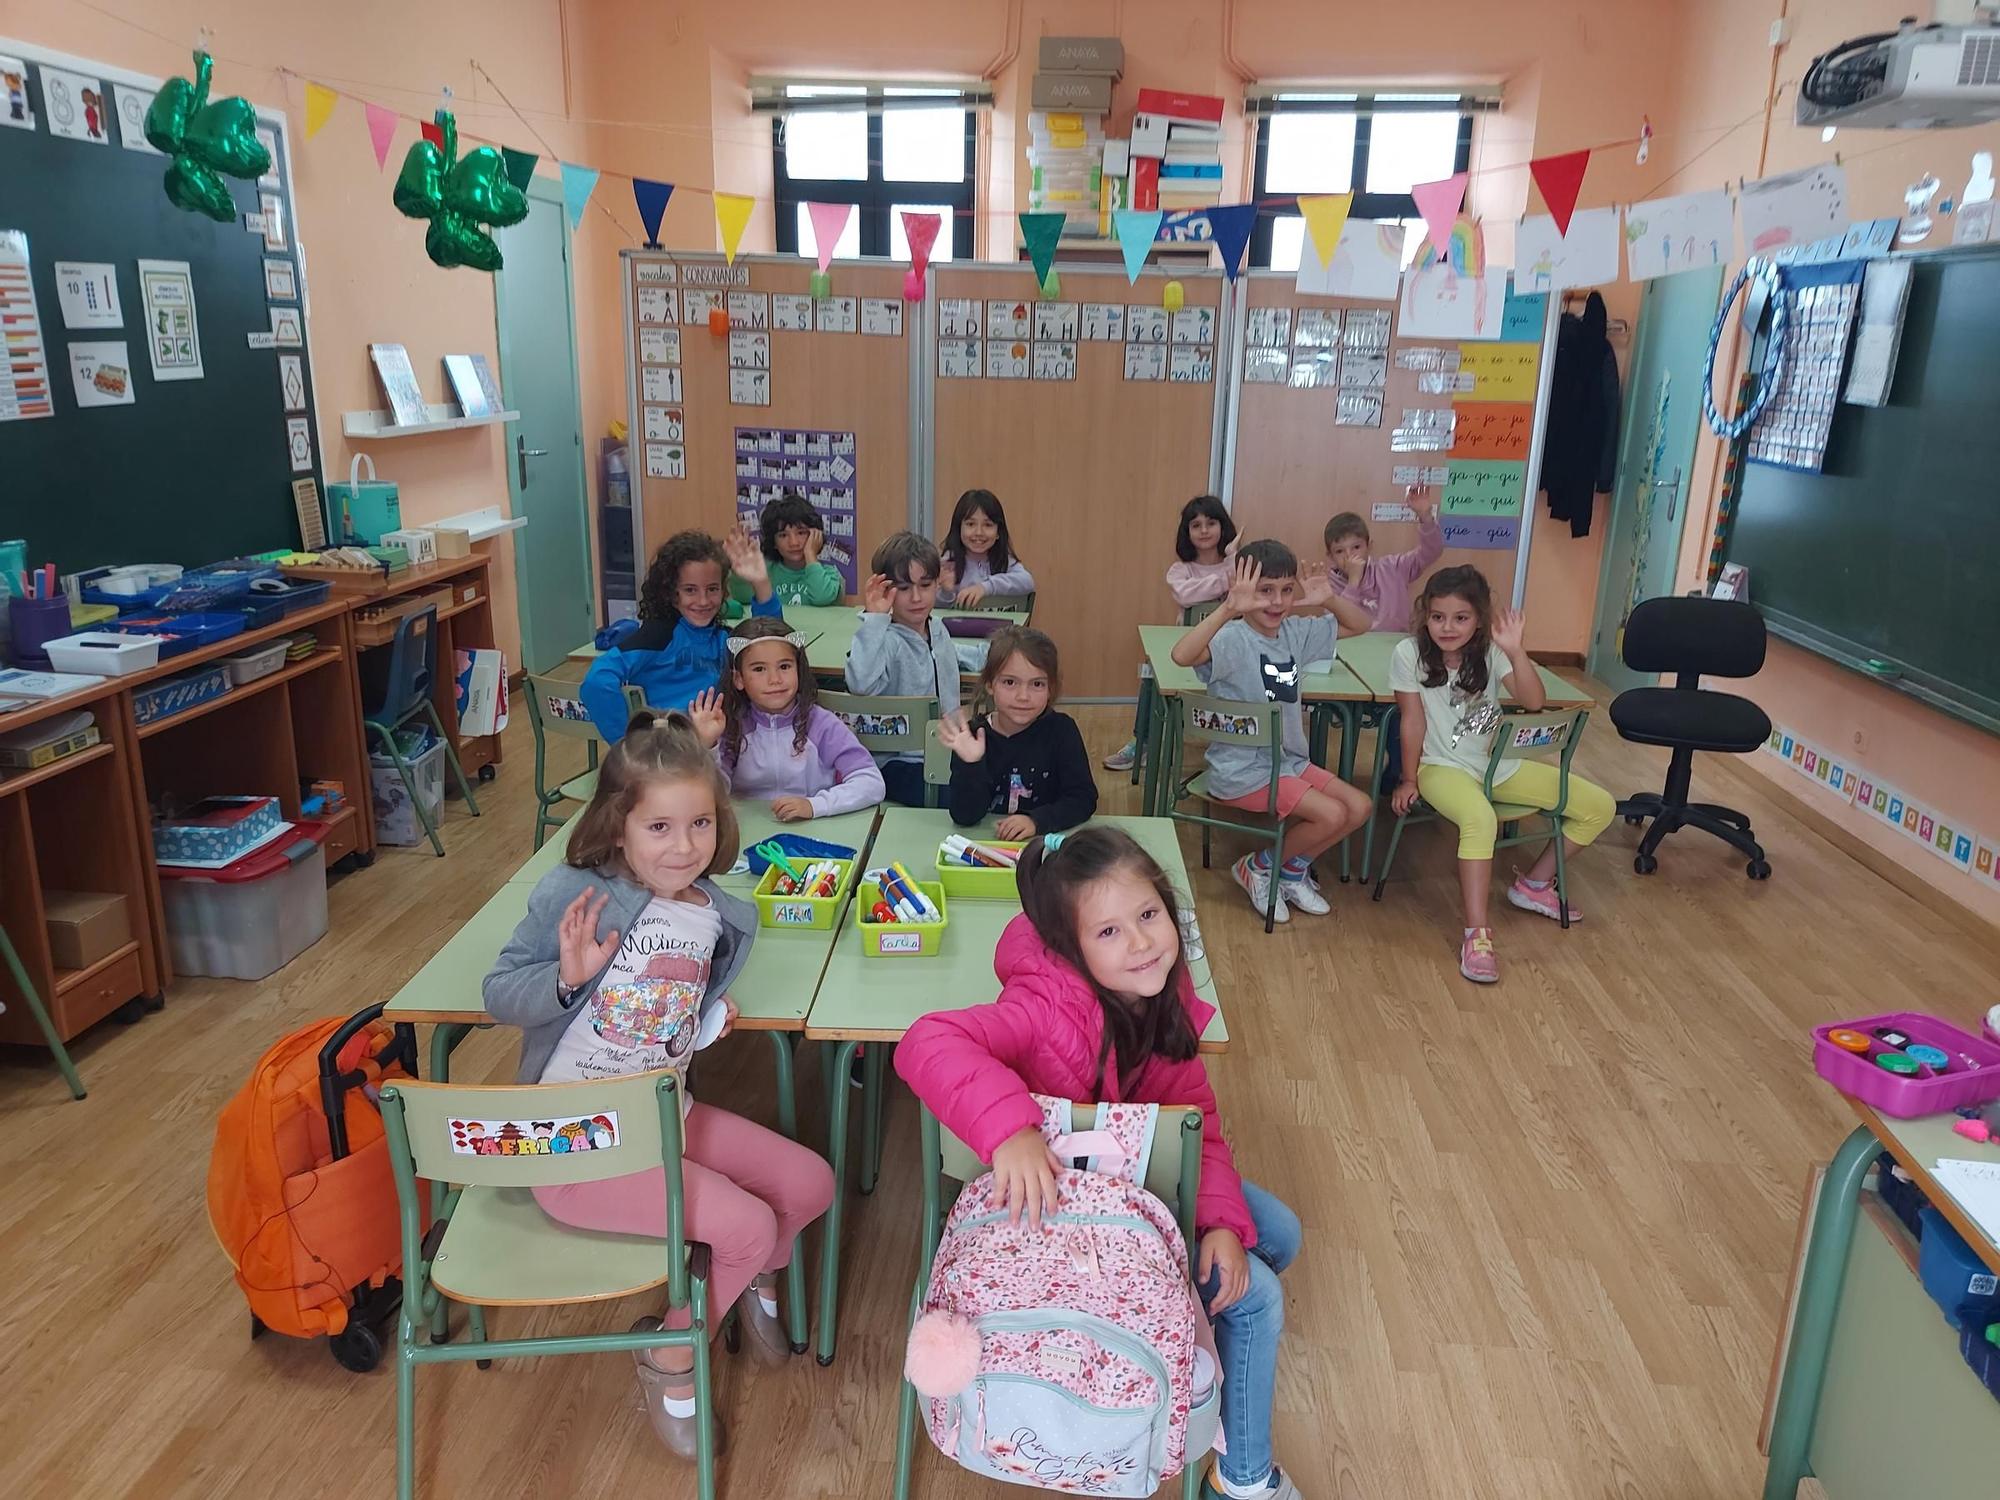 Una de las aulas de Primaria llena de niños.